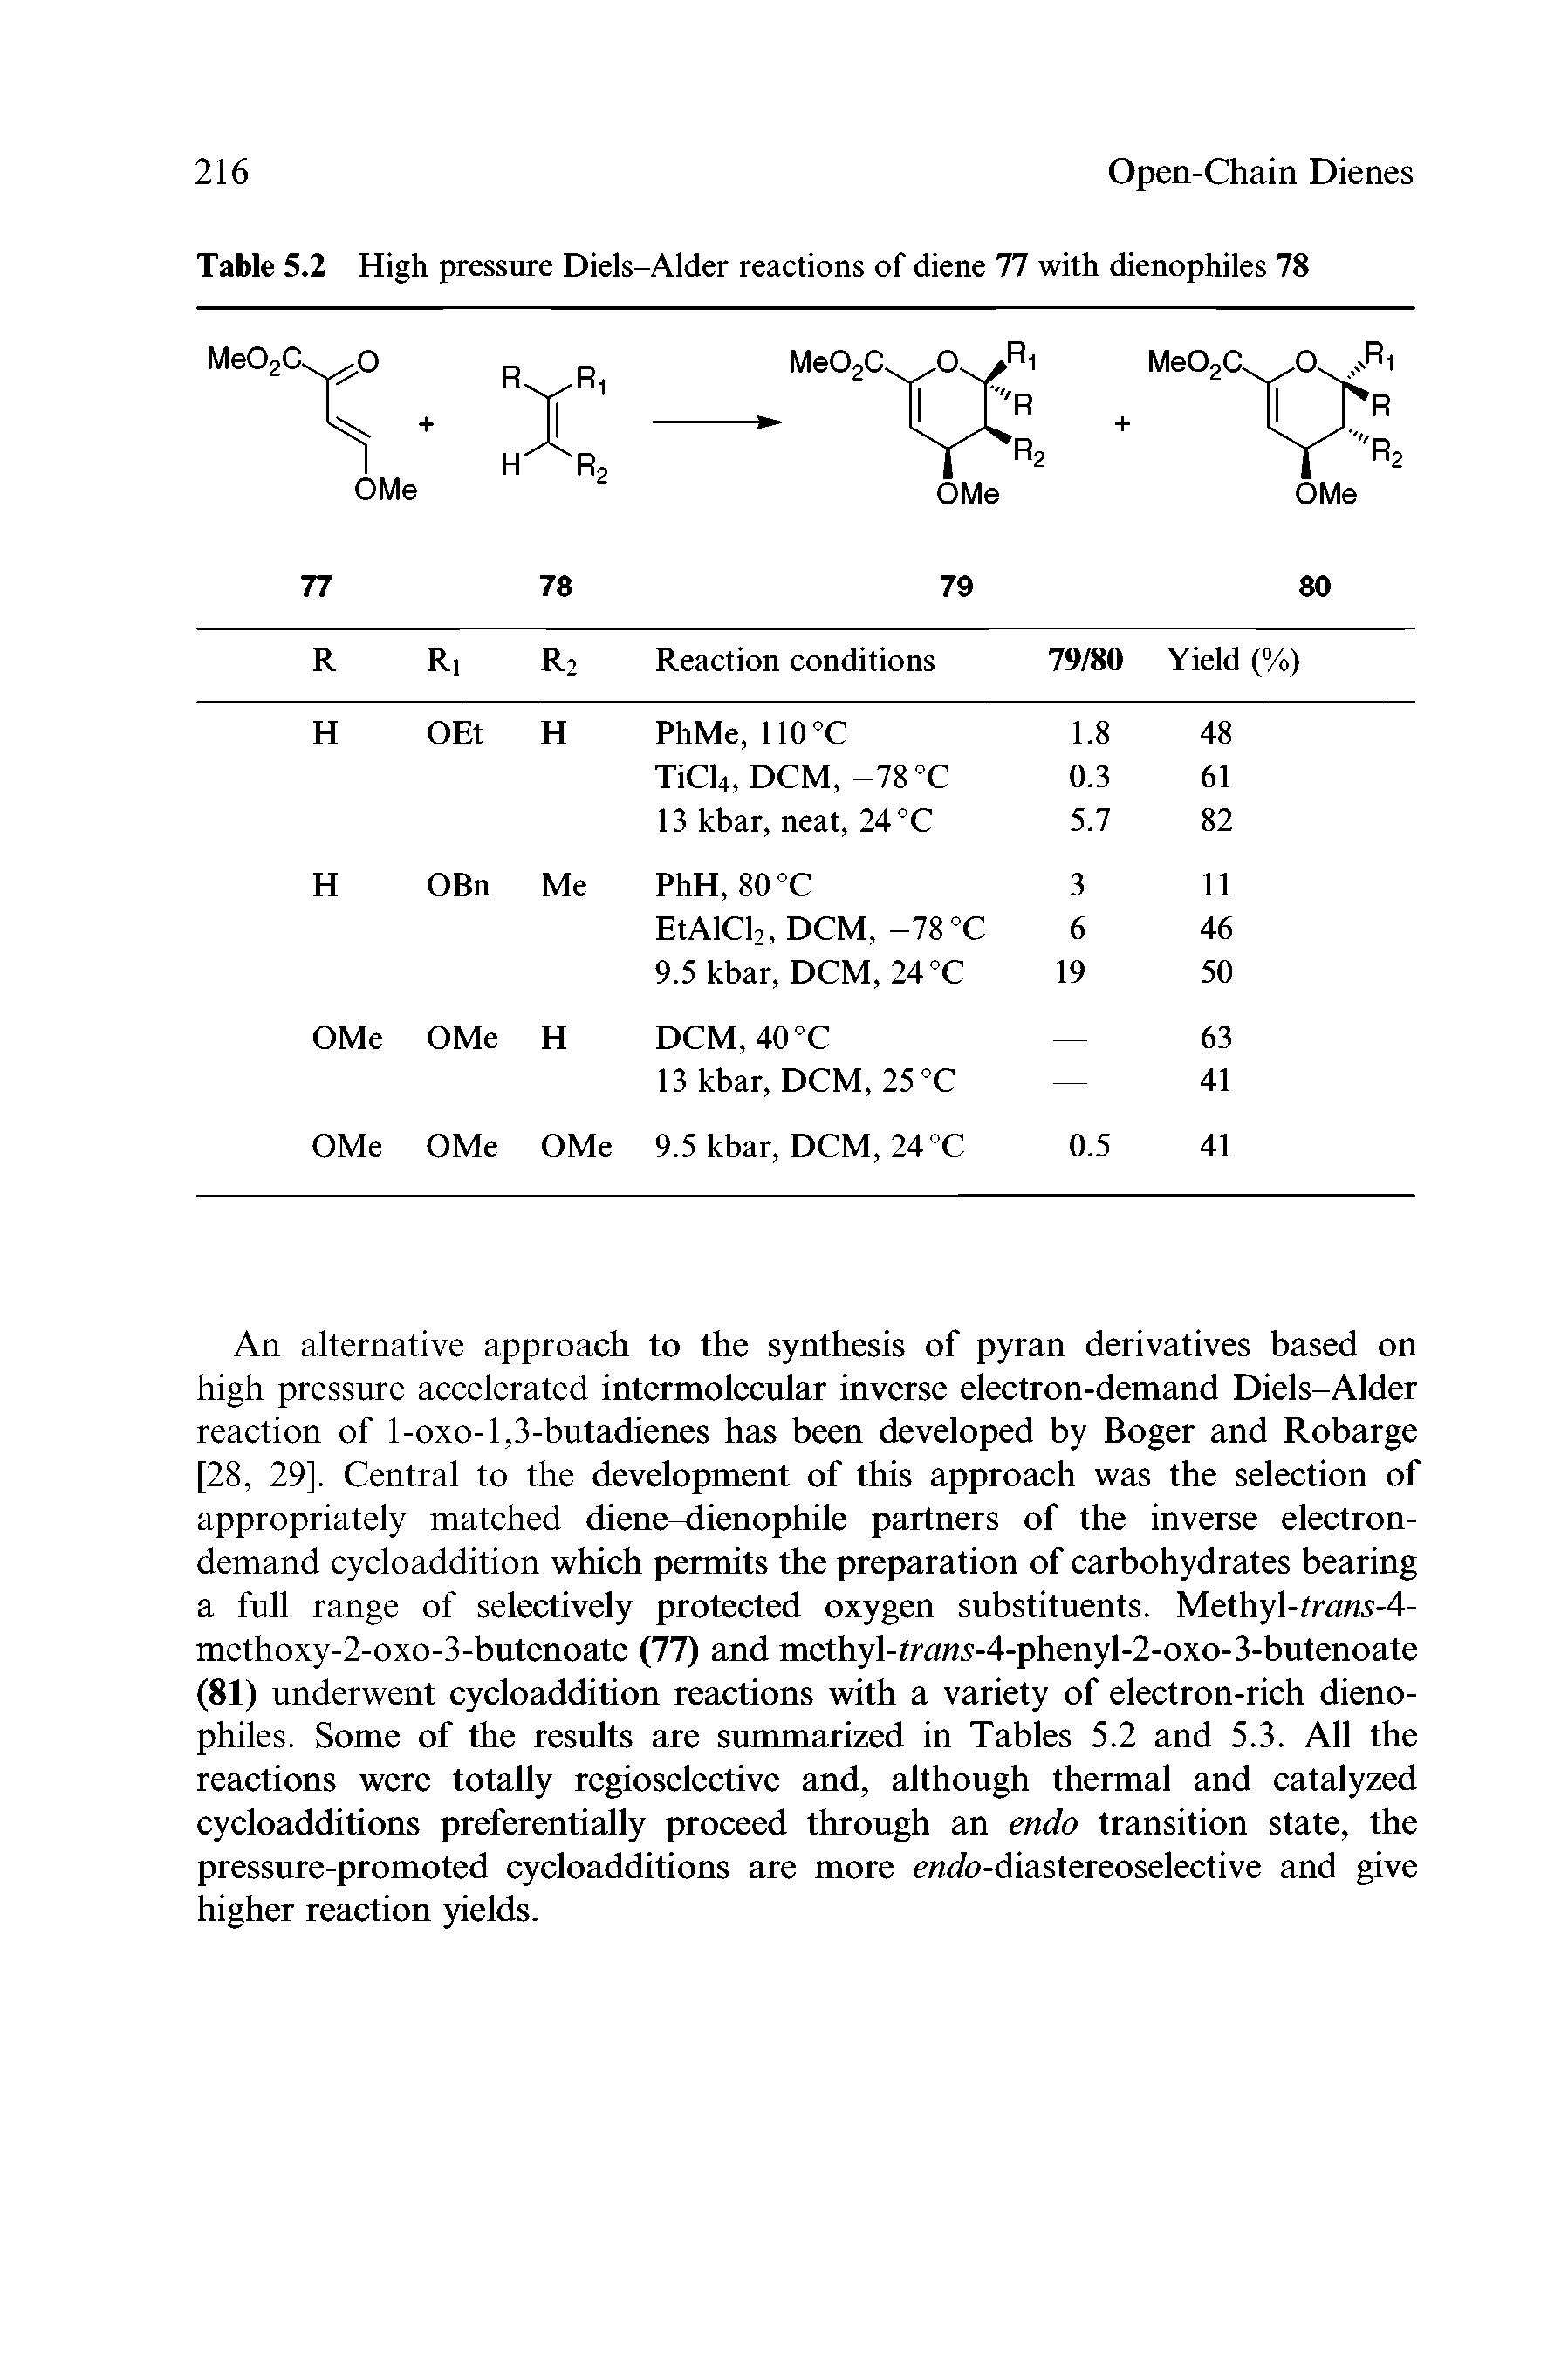 Table 5.2 High pressure Diels-Alder reactions of diene 77 with dienophiles 78...